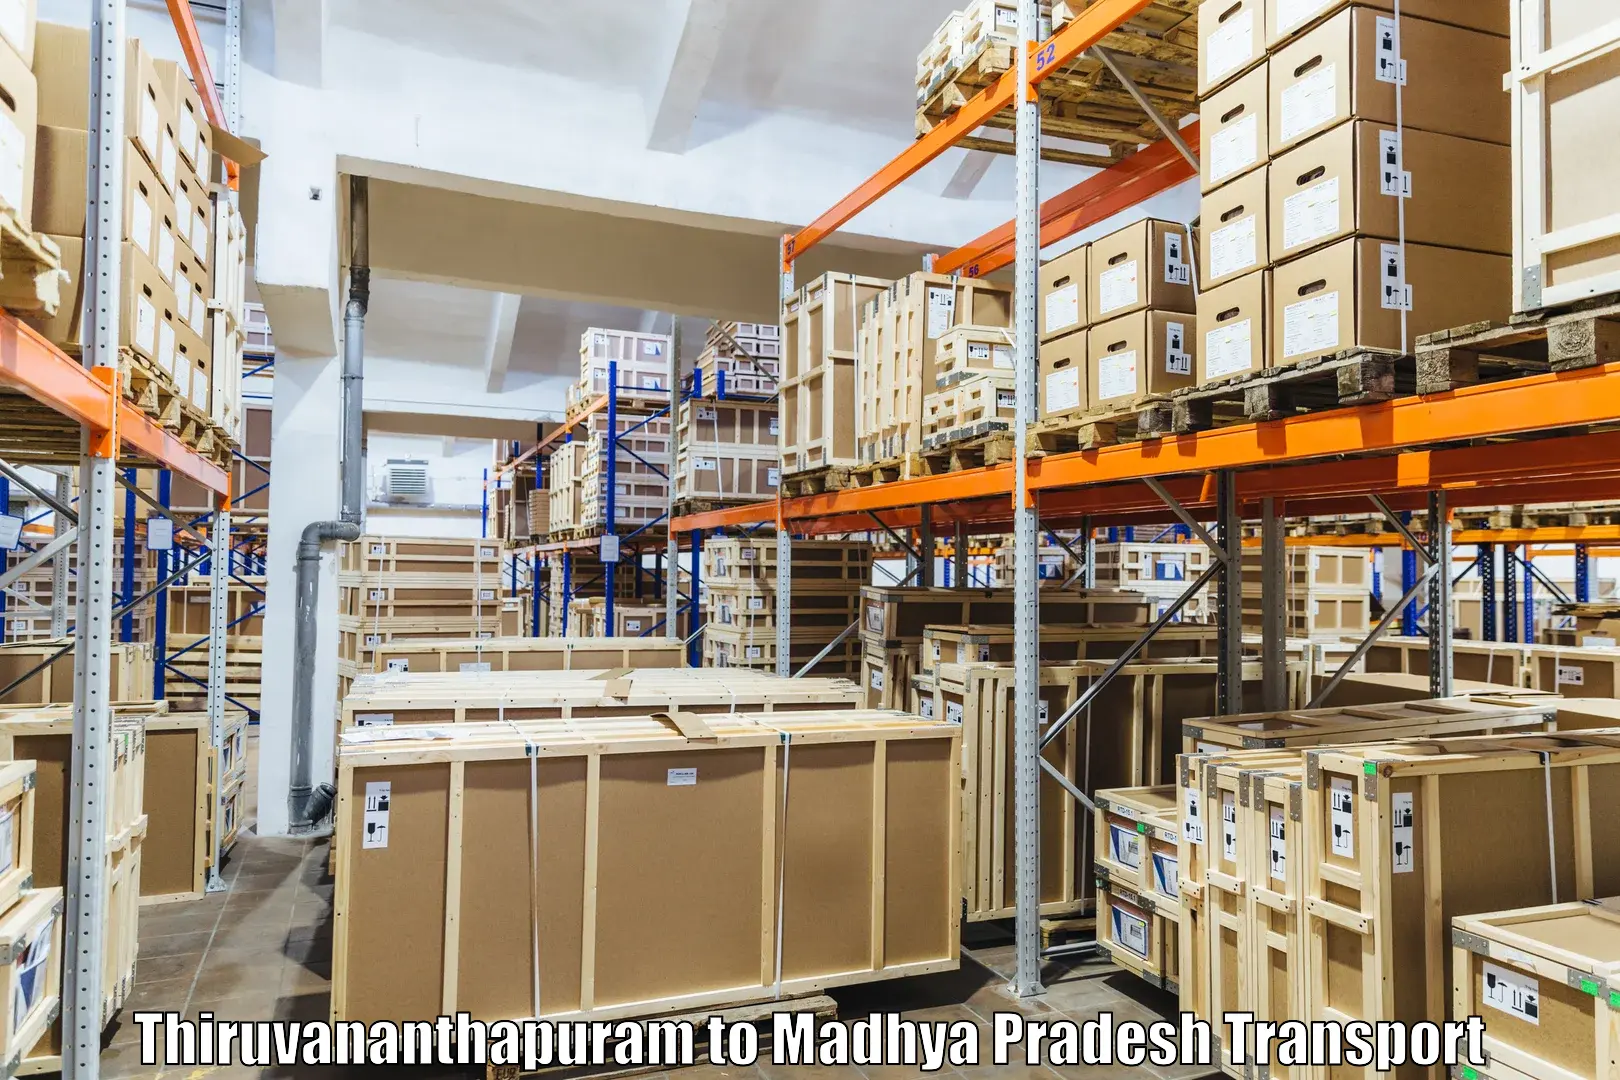 Truck transport companies in India Thiruvananthapuram to Churhat